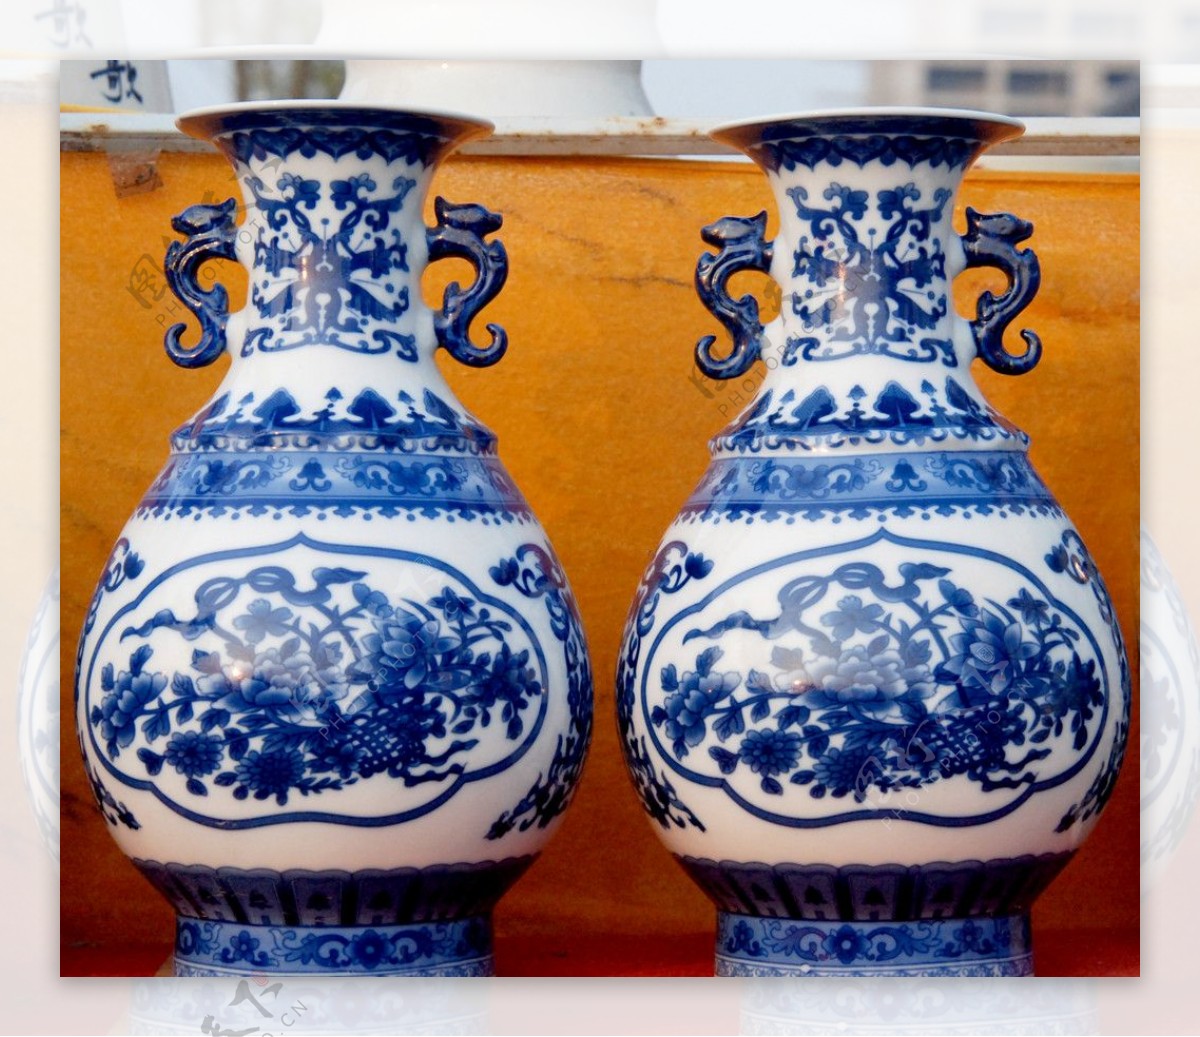 瓷器花瓶古董图片